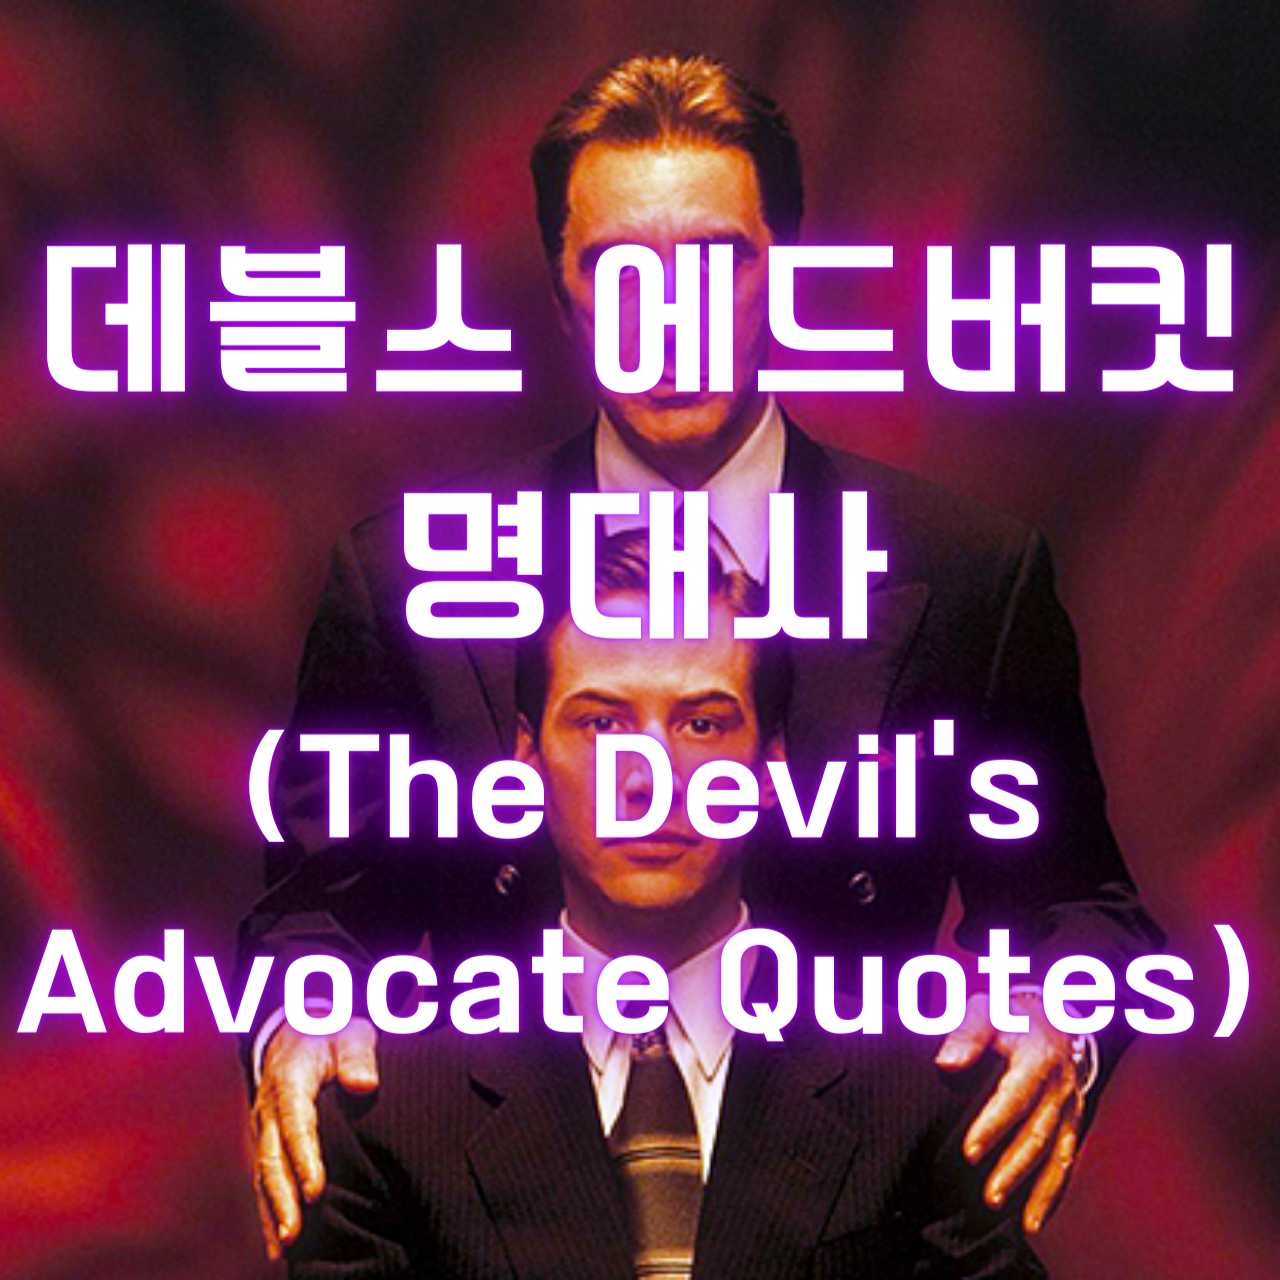 영화 데블스 에드버킷 명대사 (The Devil&#39;s Advocate Quotes)